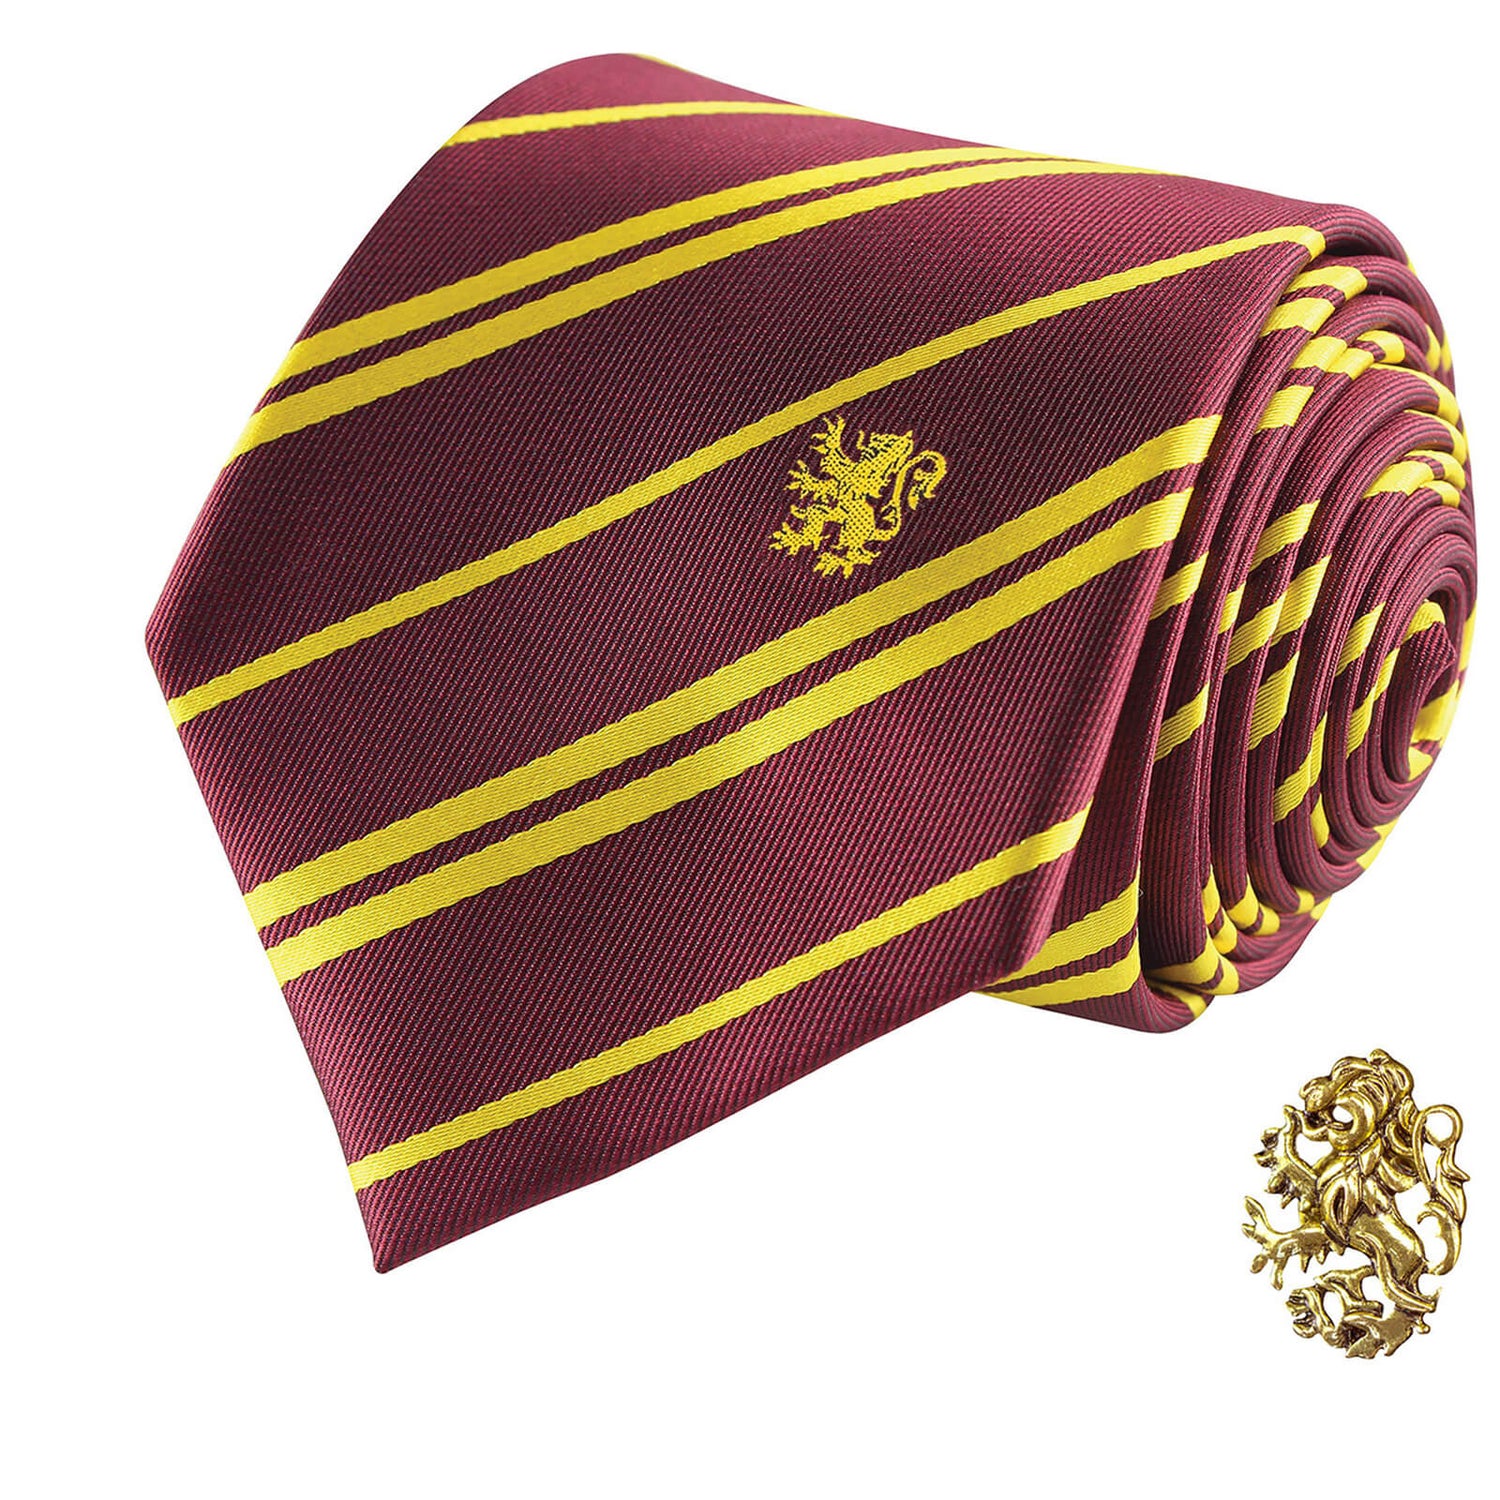 Harry Potter Cinereplica Necktie Premium Gryffindor